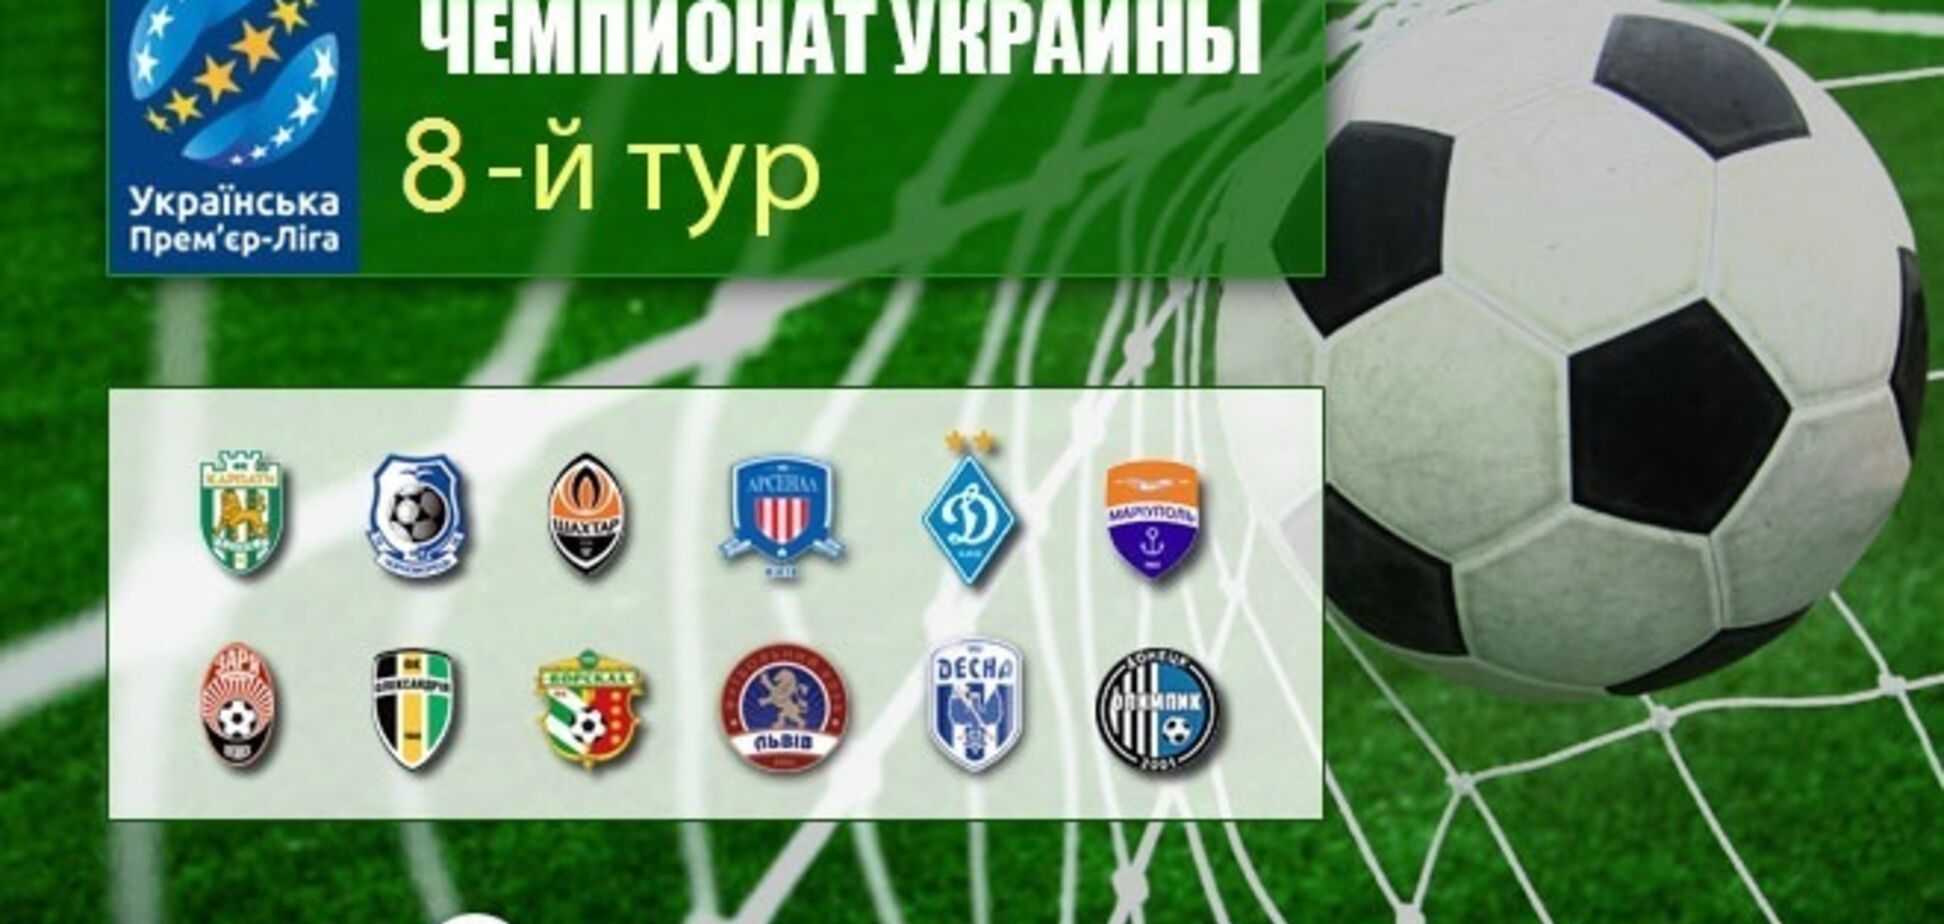 8-й тур чемпионата Украины по футболу: результаты и обзоры